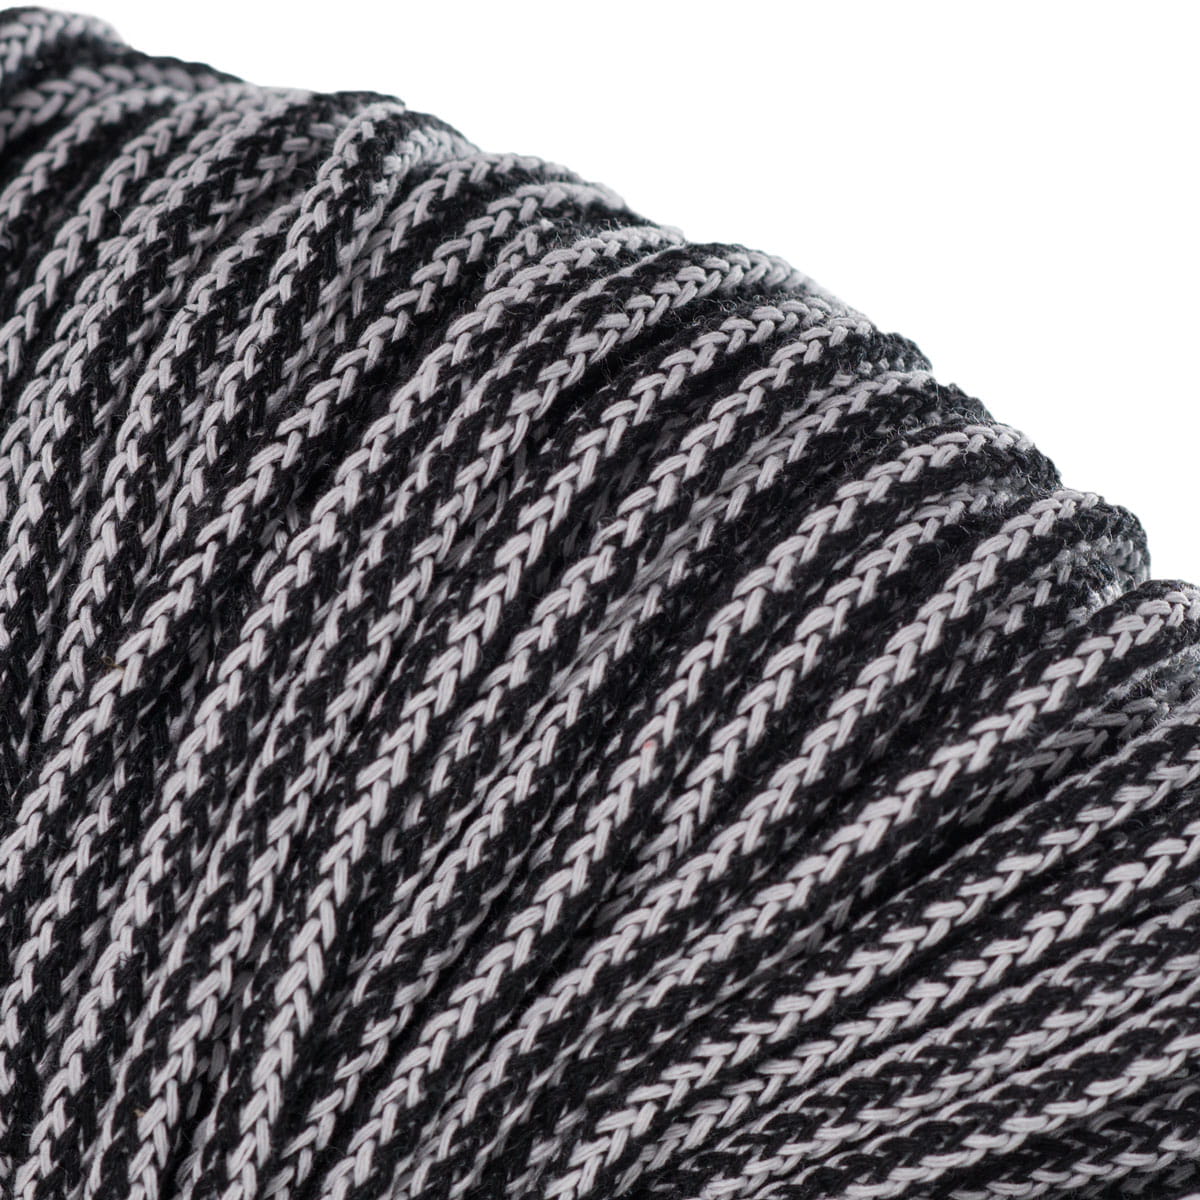 Black & White Multicolour braided cotton cord 5mm